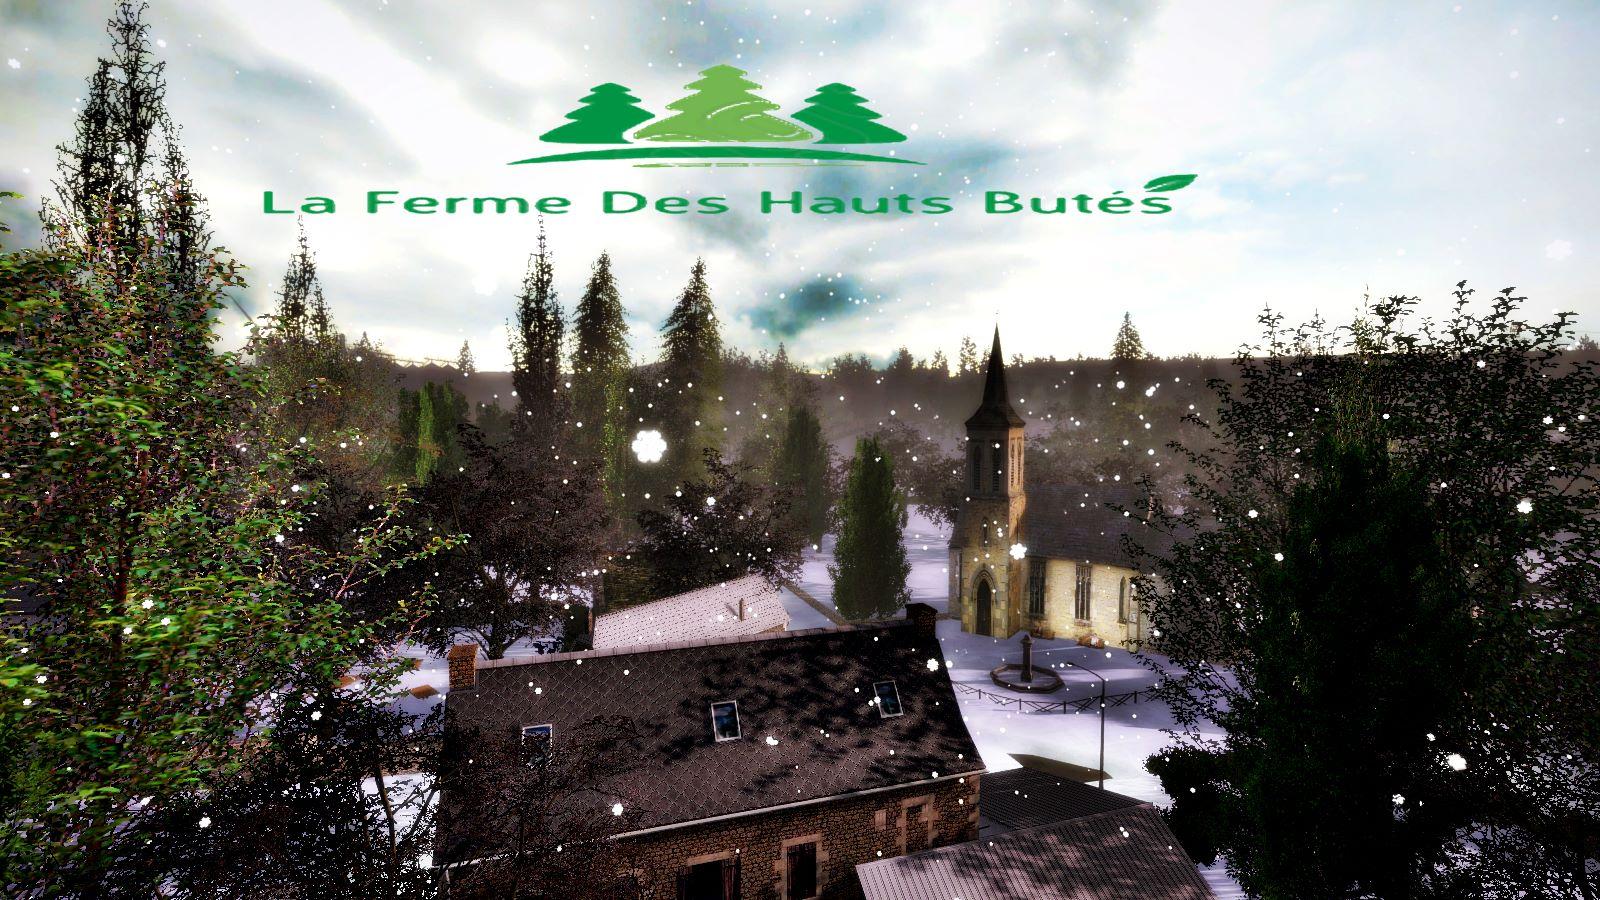 FS17 - La Ferme Des Hautes Butes Map V1.0